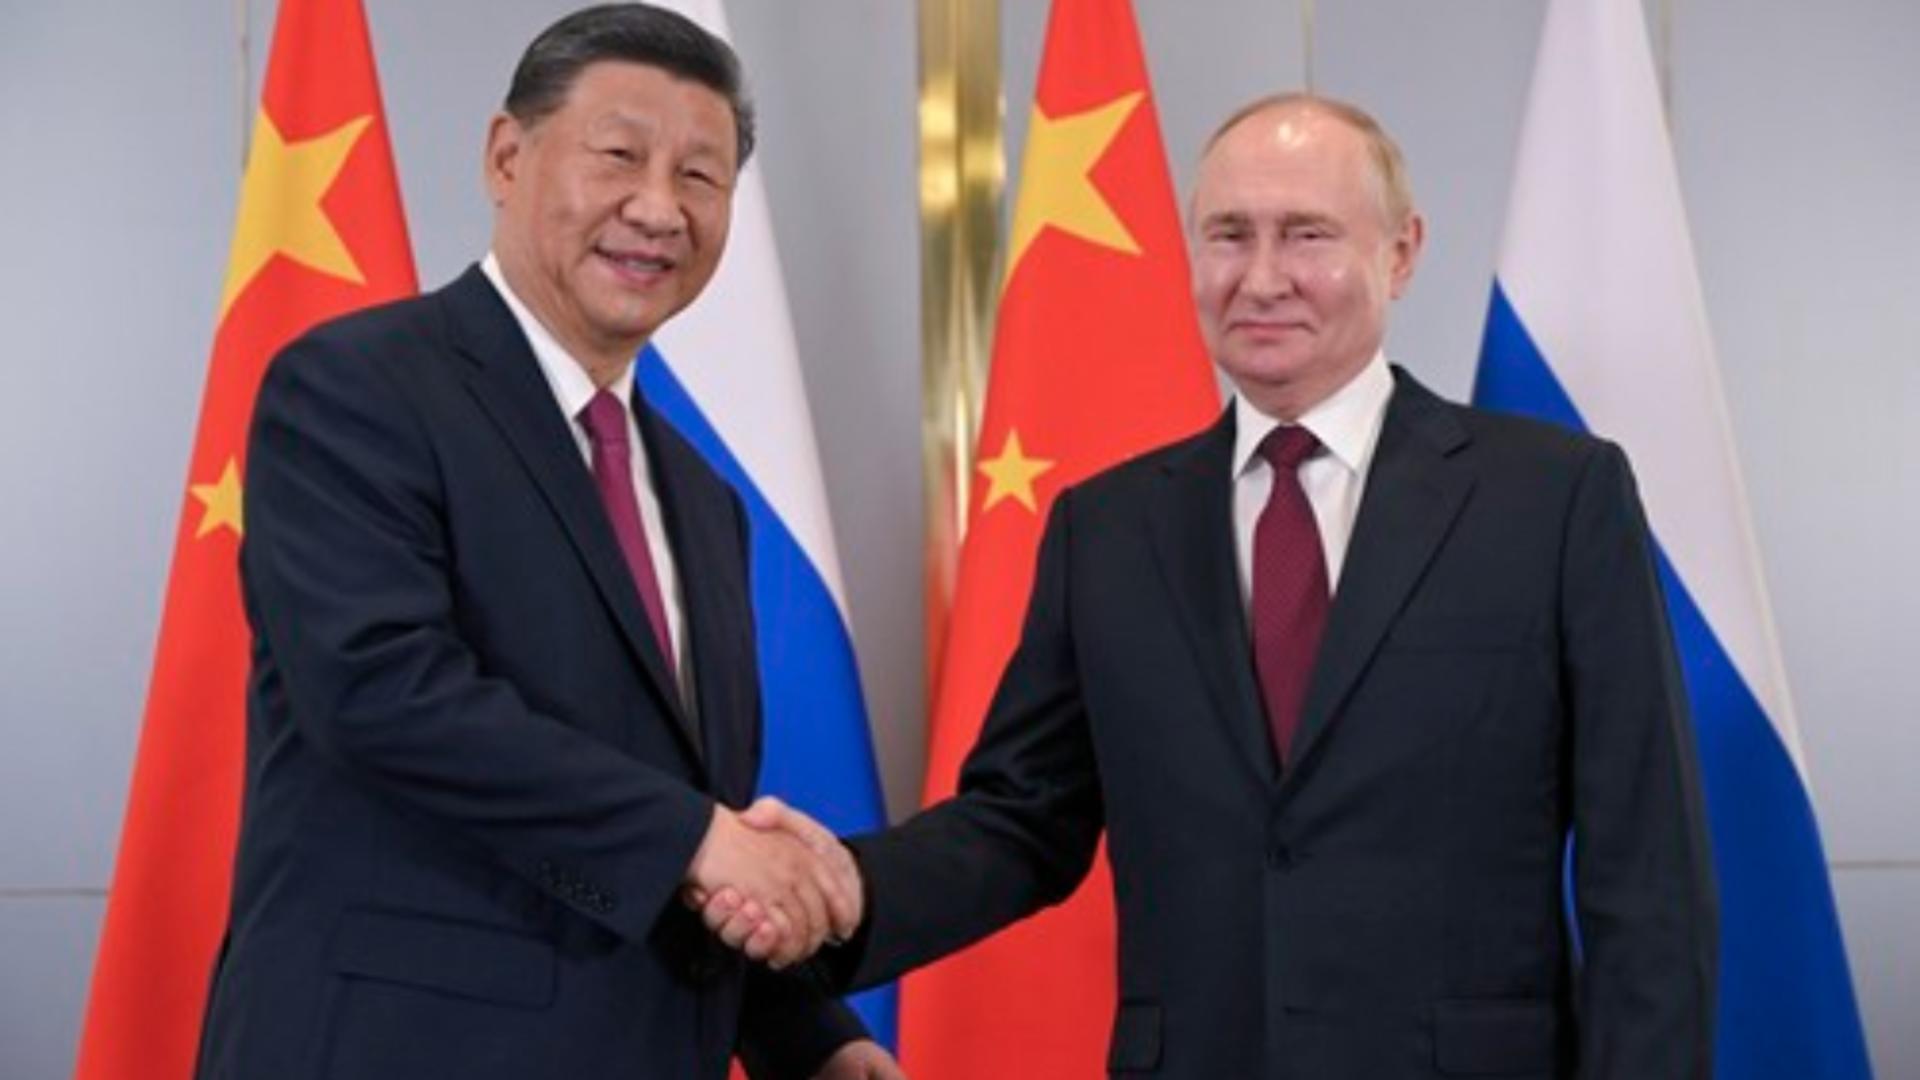 Vladimir Putin s-a întâlnit din nou cu Xi Jinping, la numai o lună şi jumătate după ultimele lor discuţii. Ce au declarat cei doi lideri